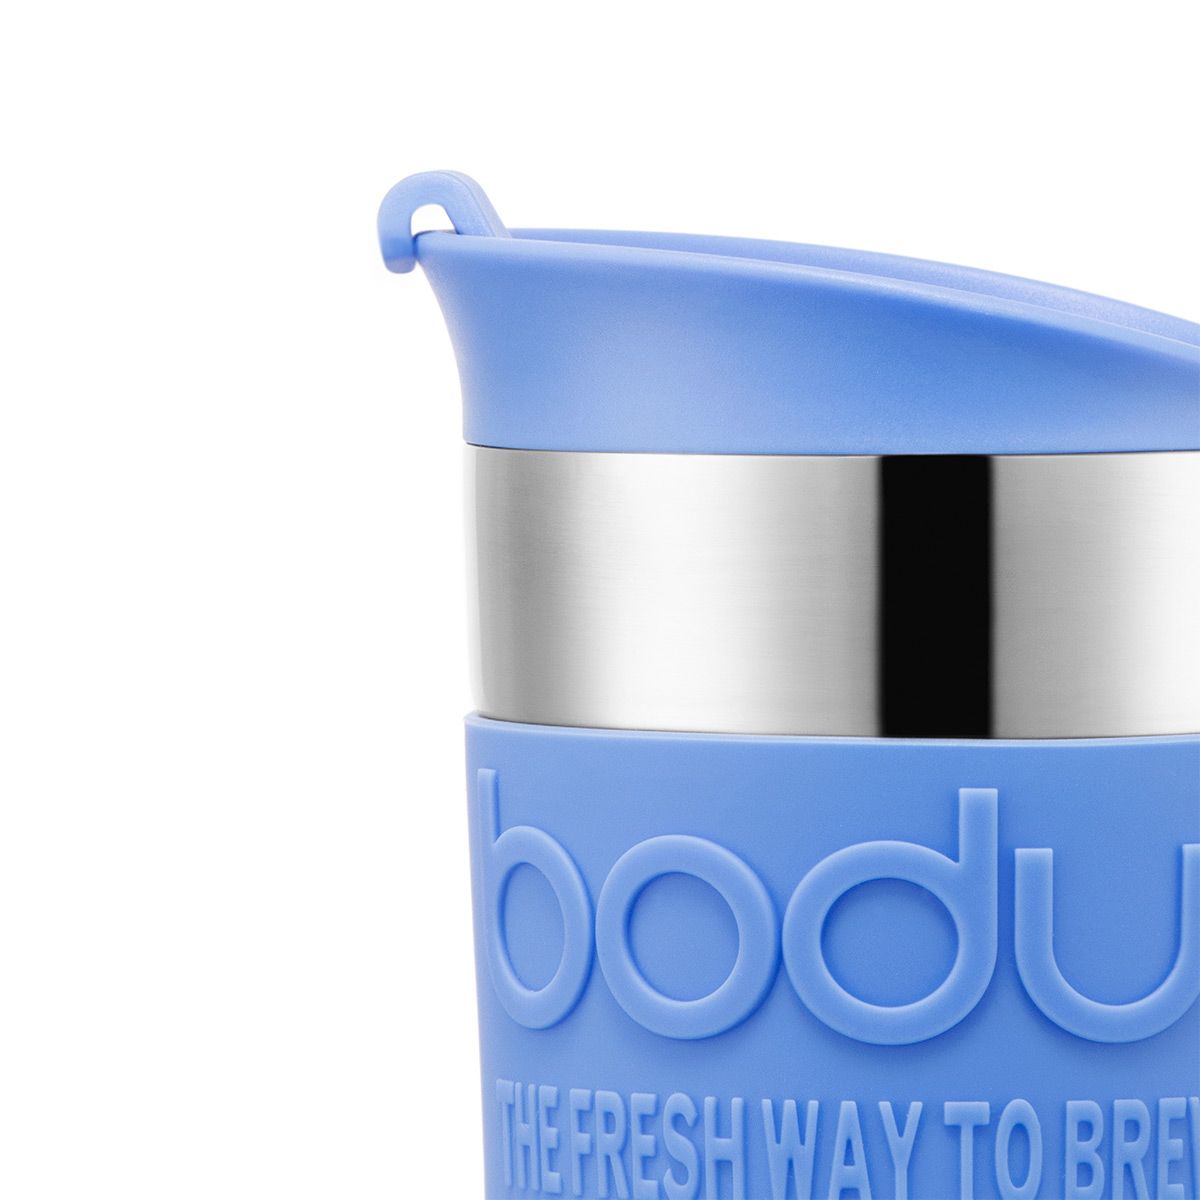 Bodum 0.35 l noir travel press mug à piston isotherme en plastique